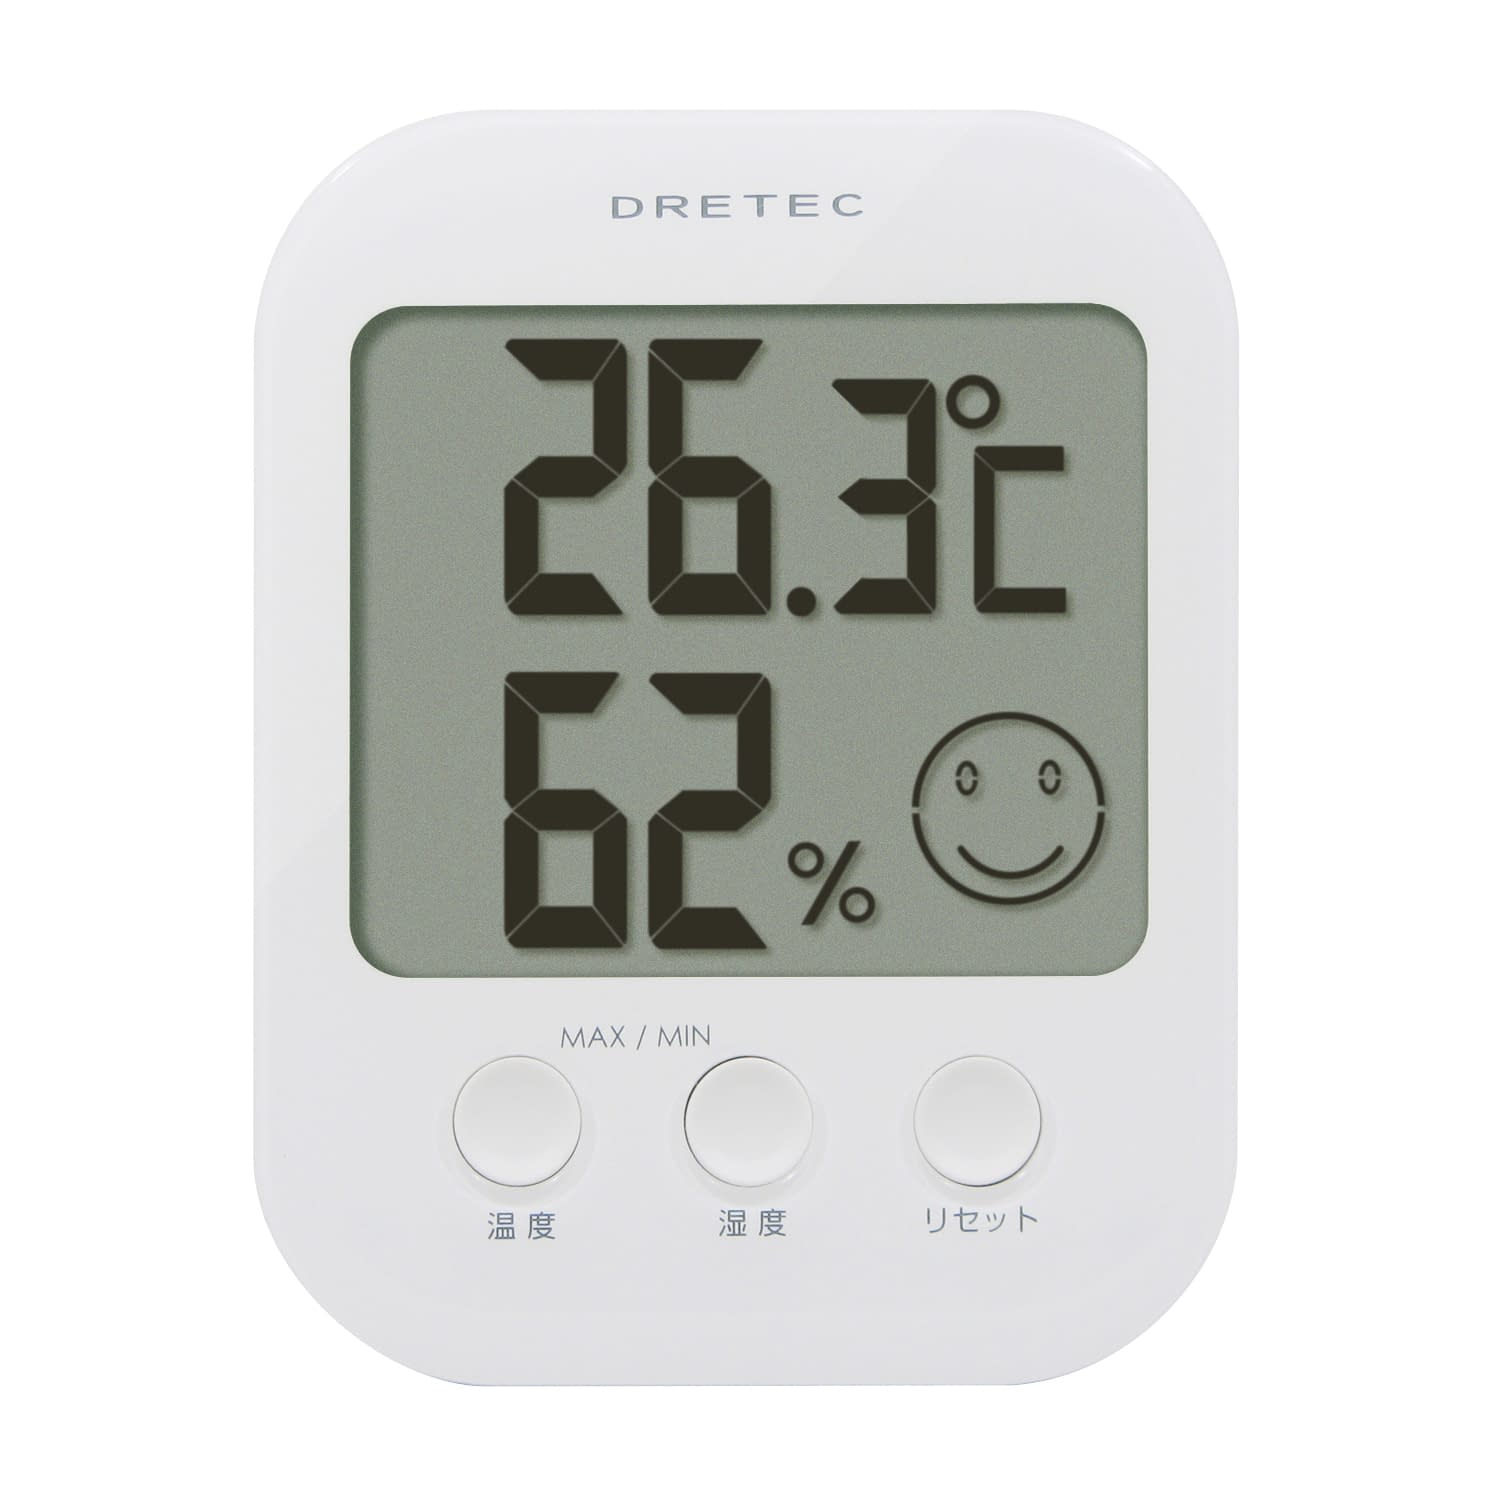 (23-7591-00)デジタル温湿度計オプシス O-230WT(ﾎﾜｲﾄ) ﾃﾞｼﾞﾀﾙｵﾝｼﾂﾄﾞｹｲｵﾌﾟｼｽ(ドリテック)【1個単位】【2018年カタログ商品】